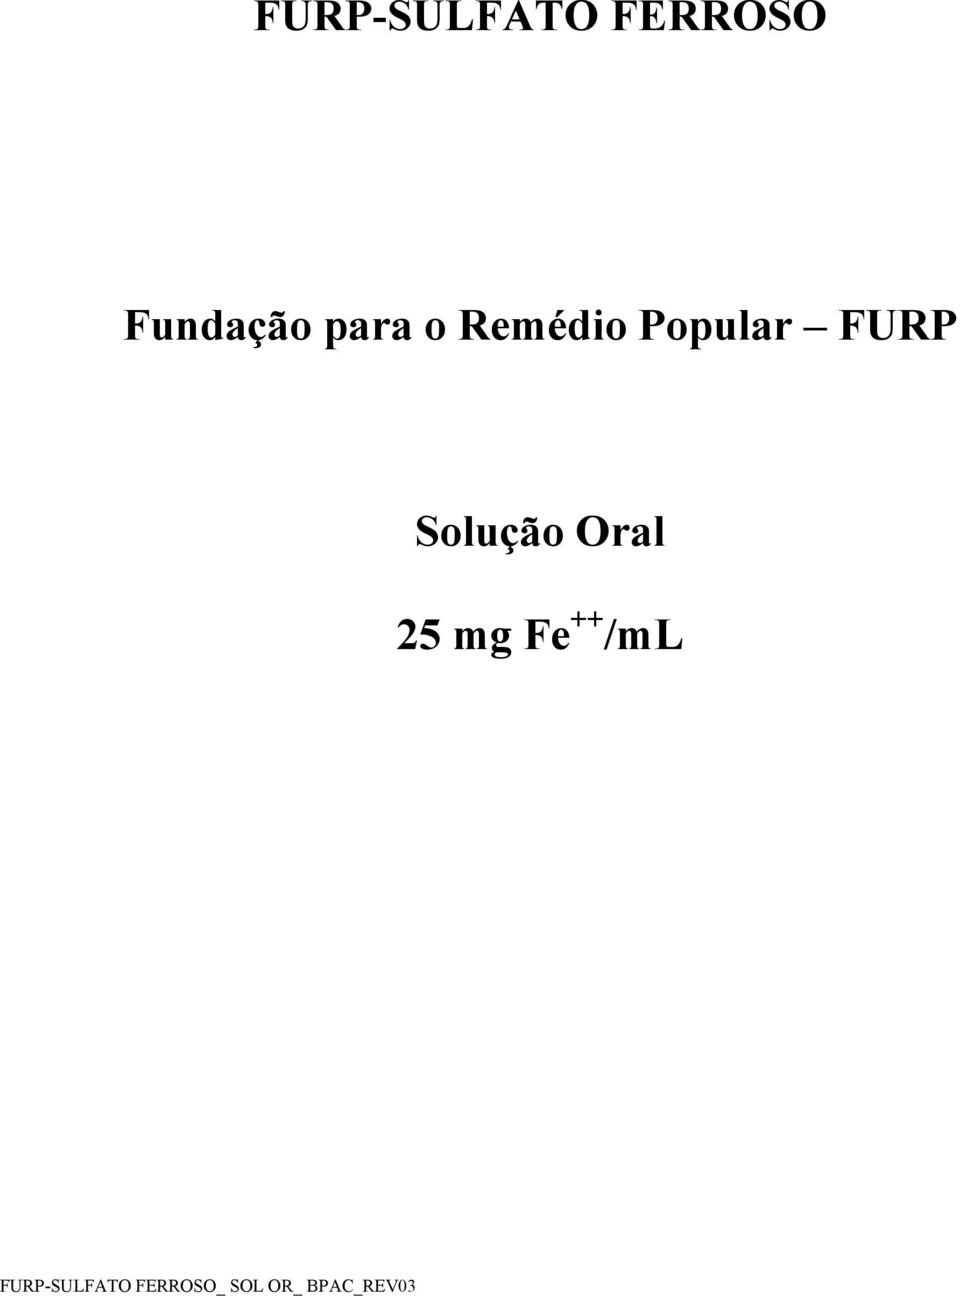 Solução Oral 25 mg Fe ++ /ml